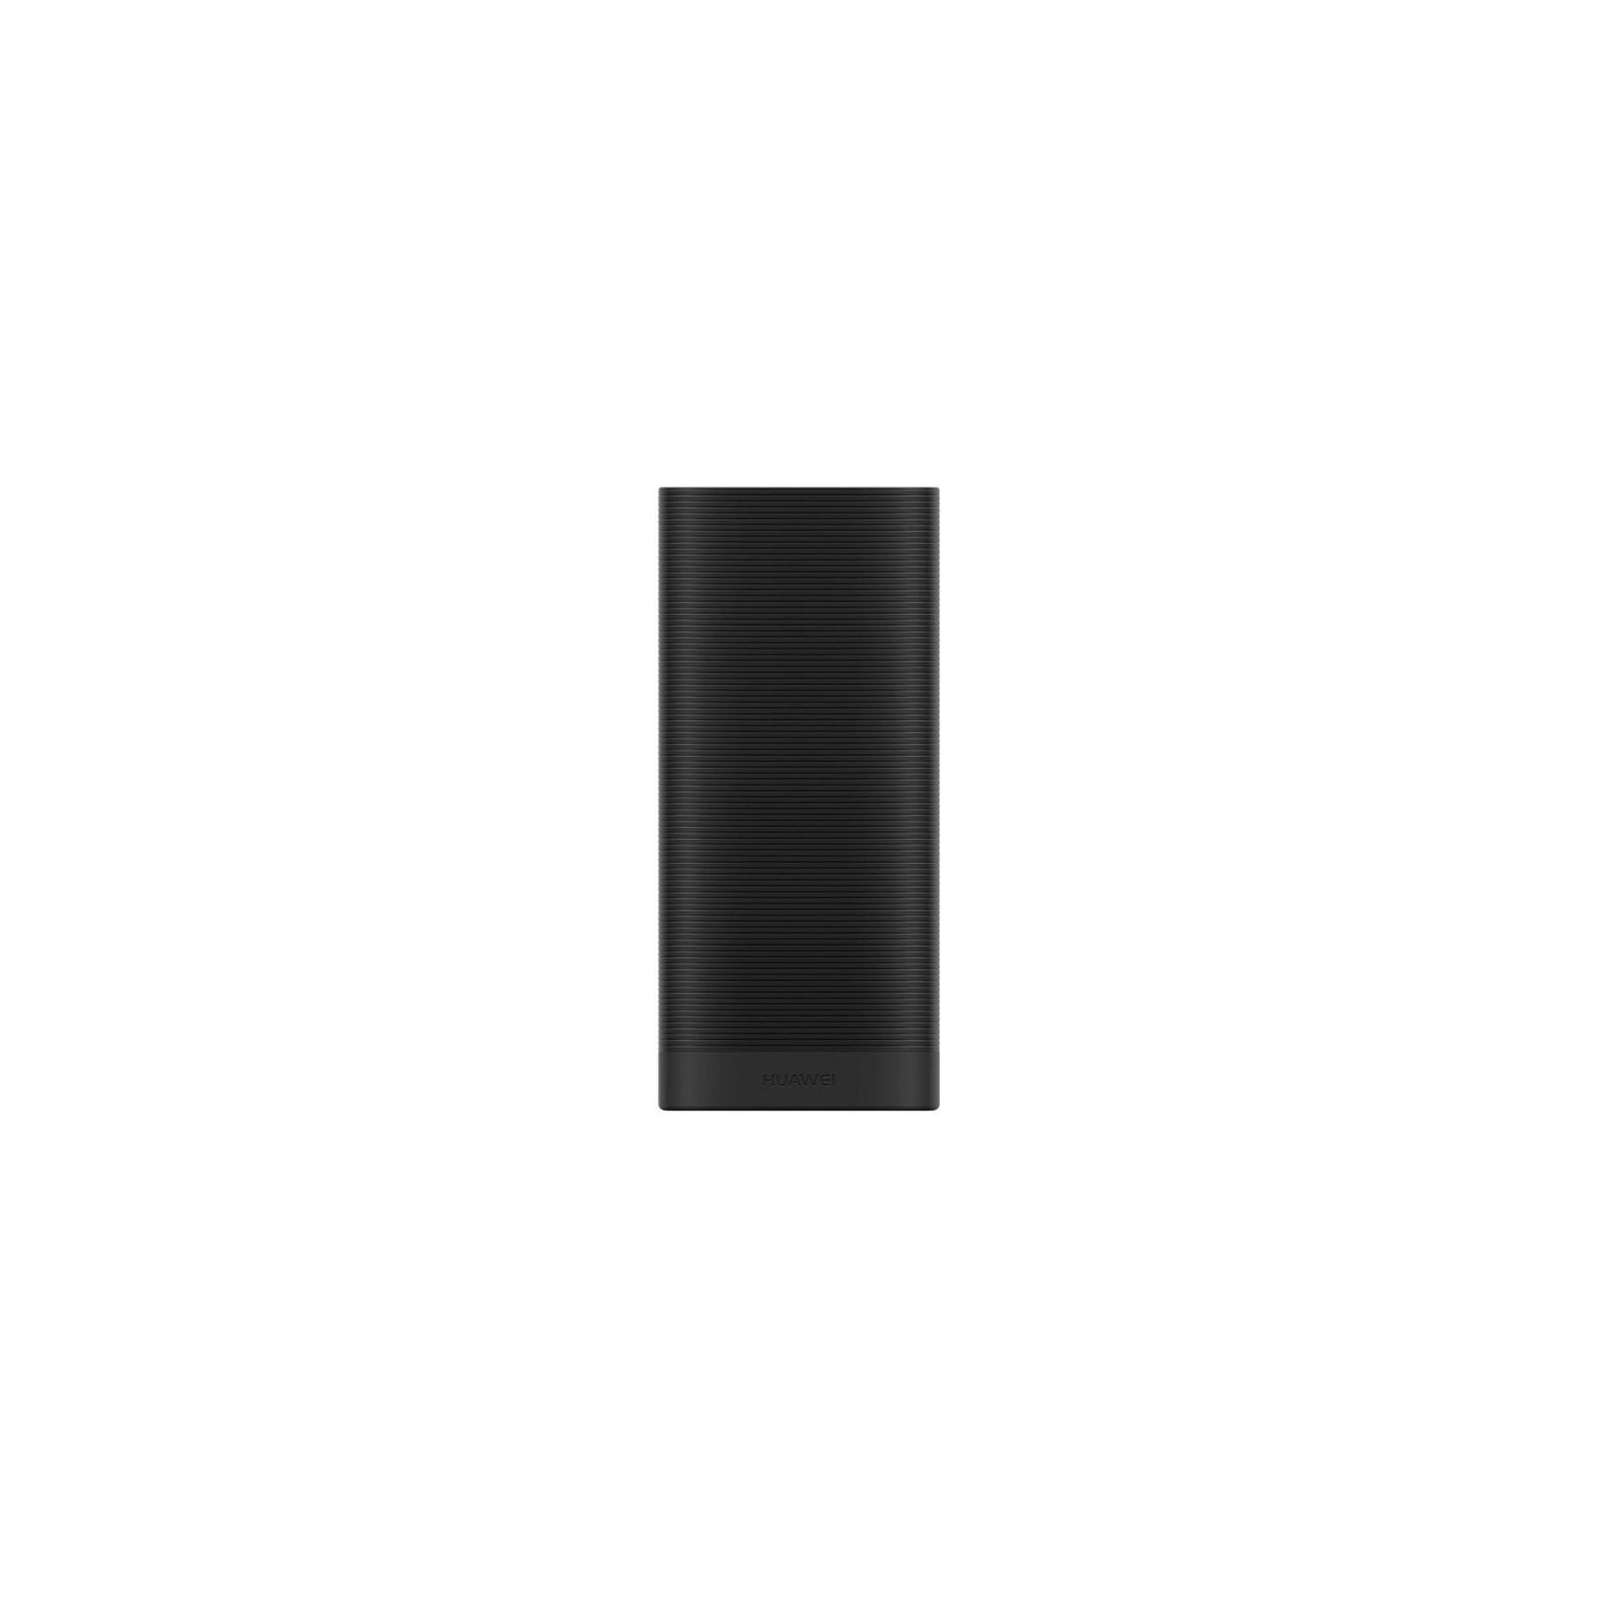 Батарея универсальная Huawei CP07 6700mAh Black (55030127_) изображение 4